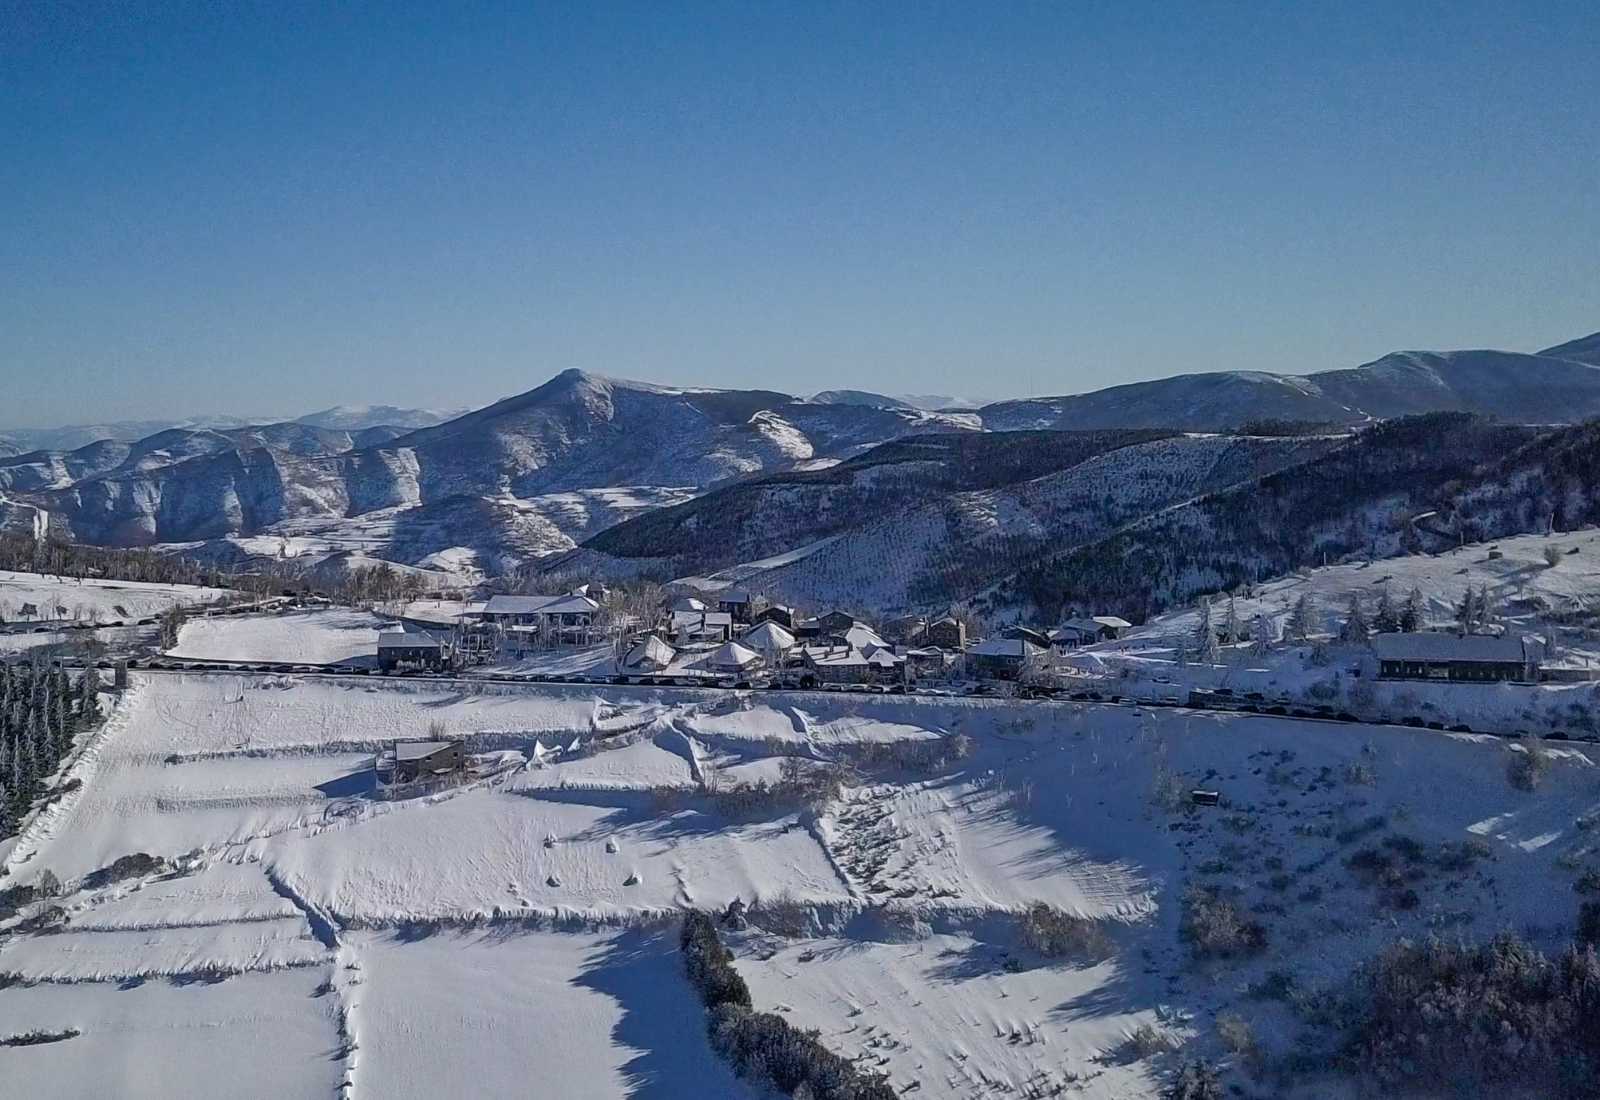 Snowy mountains in O Cebreiro